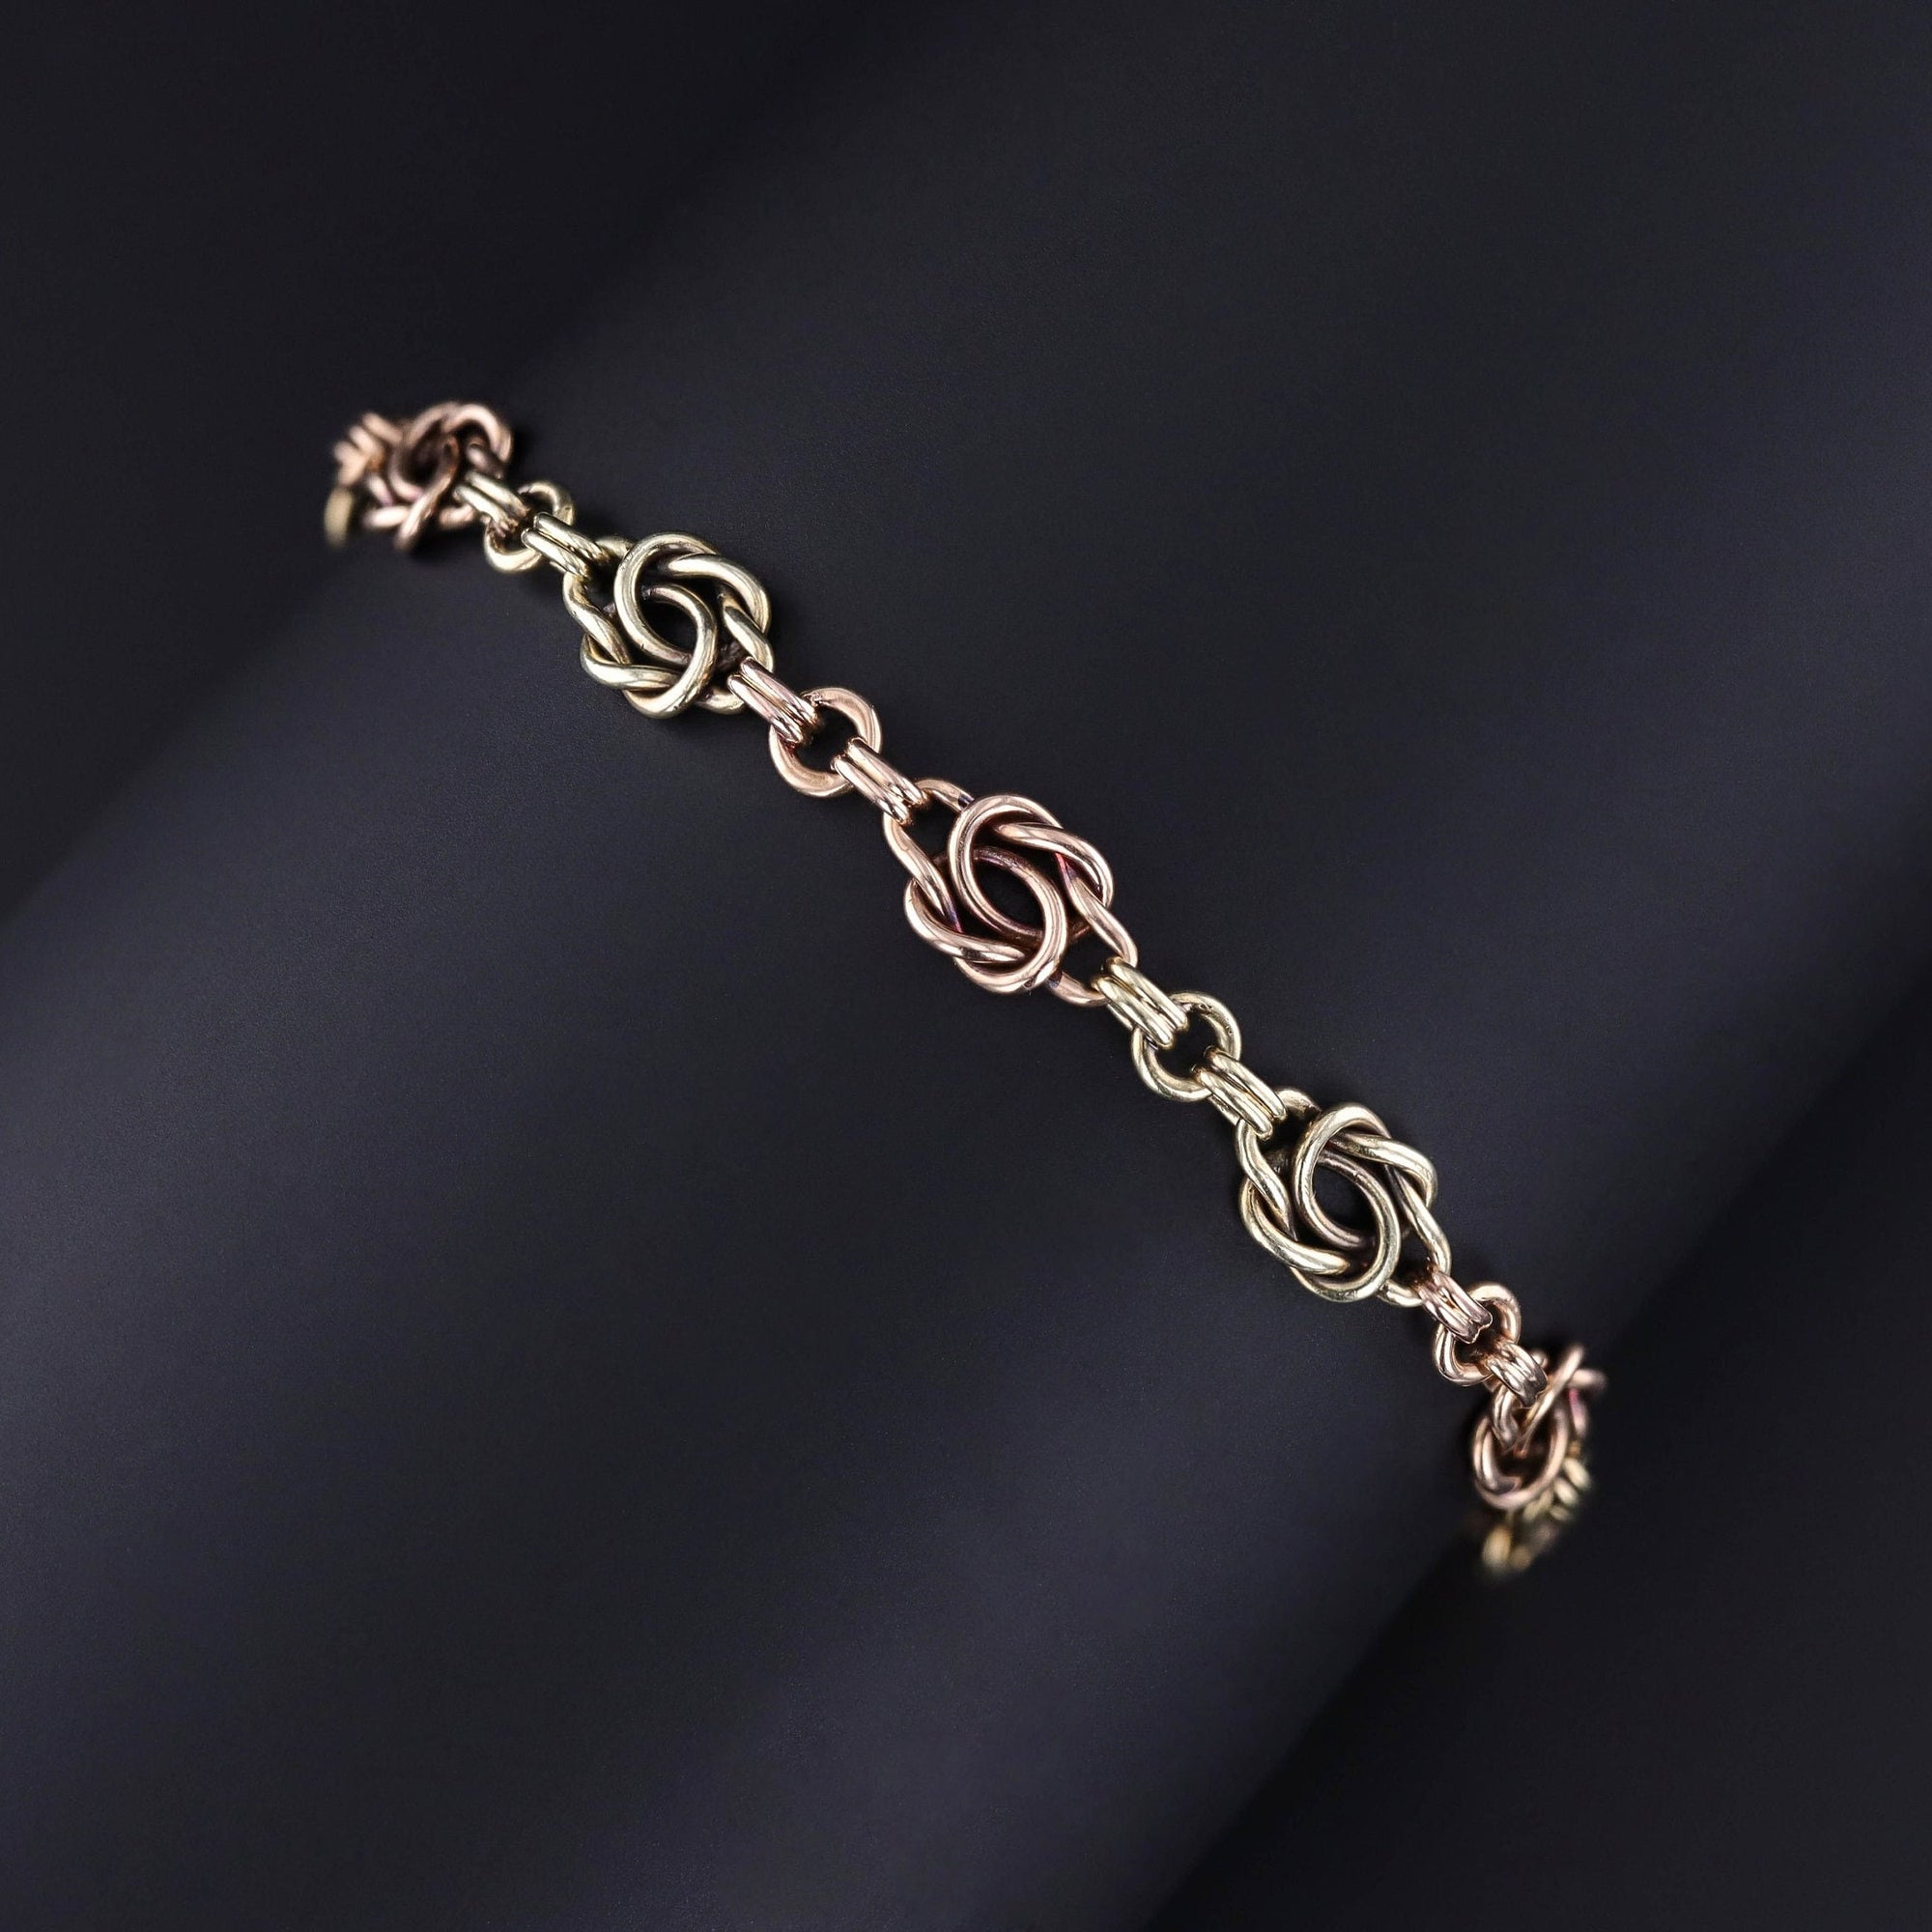 Antique Love Knot Bracelet of 14k Rose & Green Gold